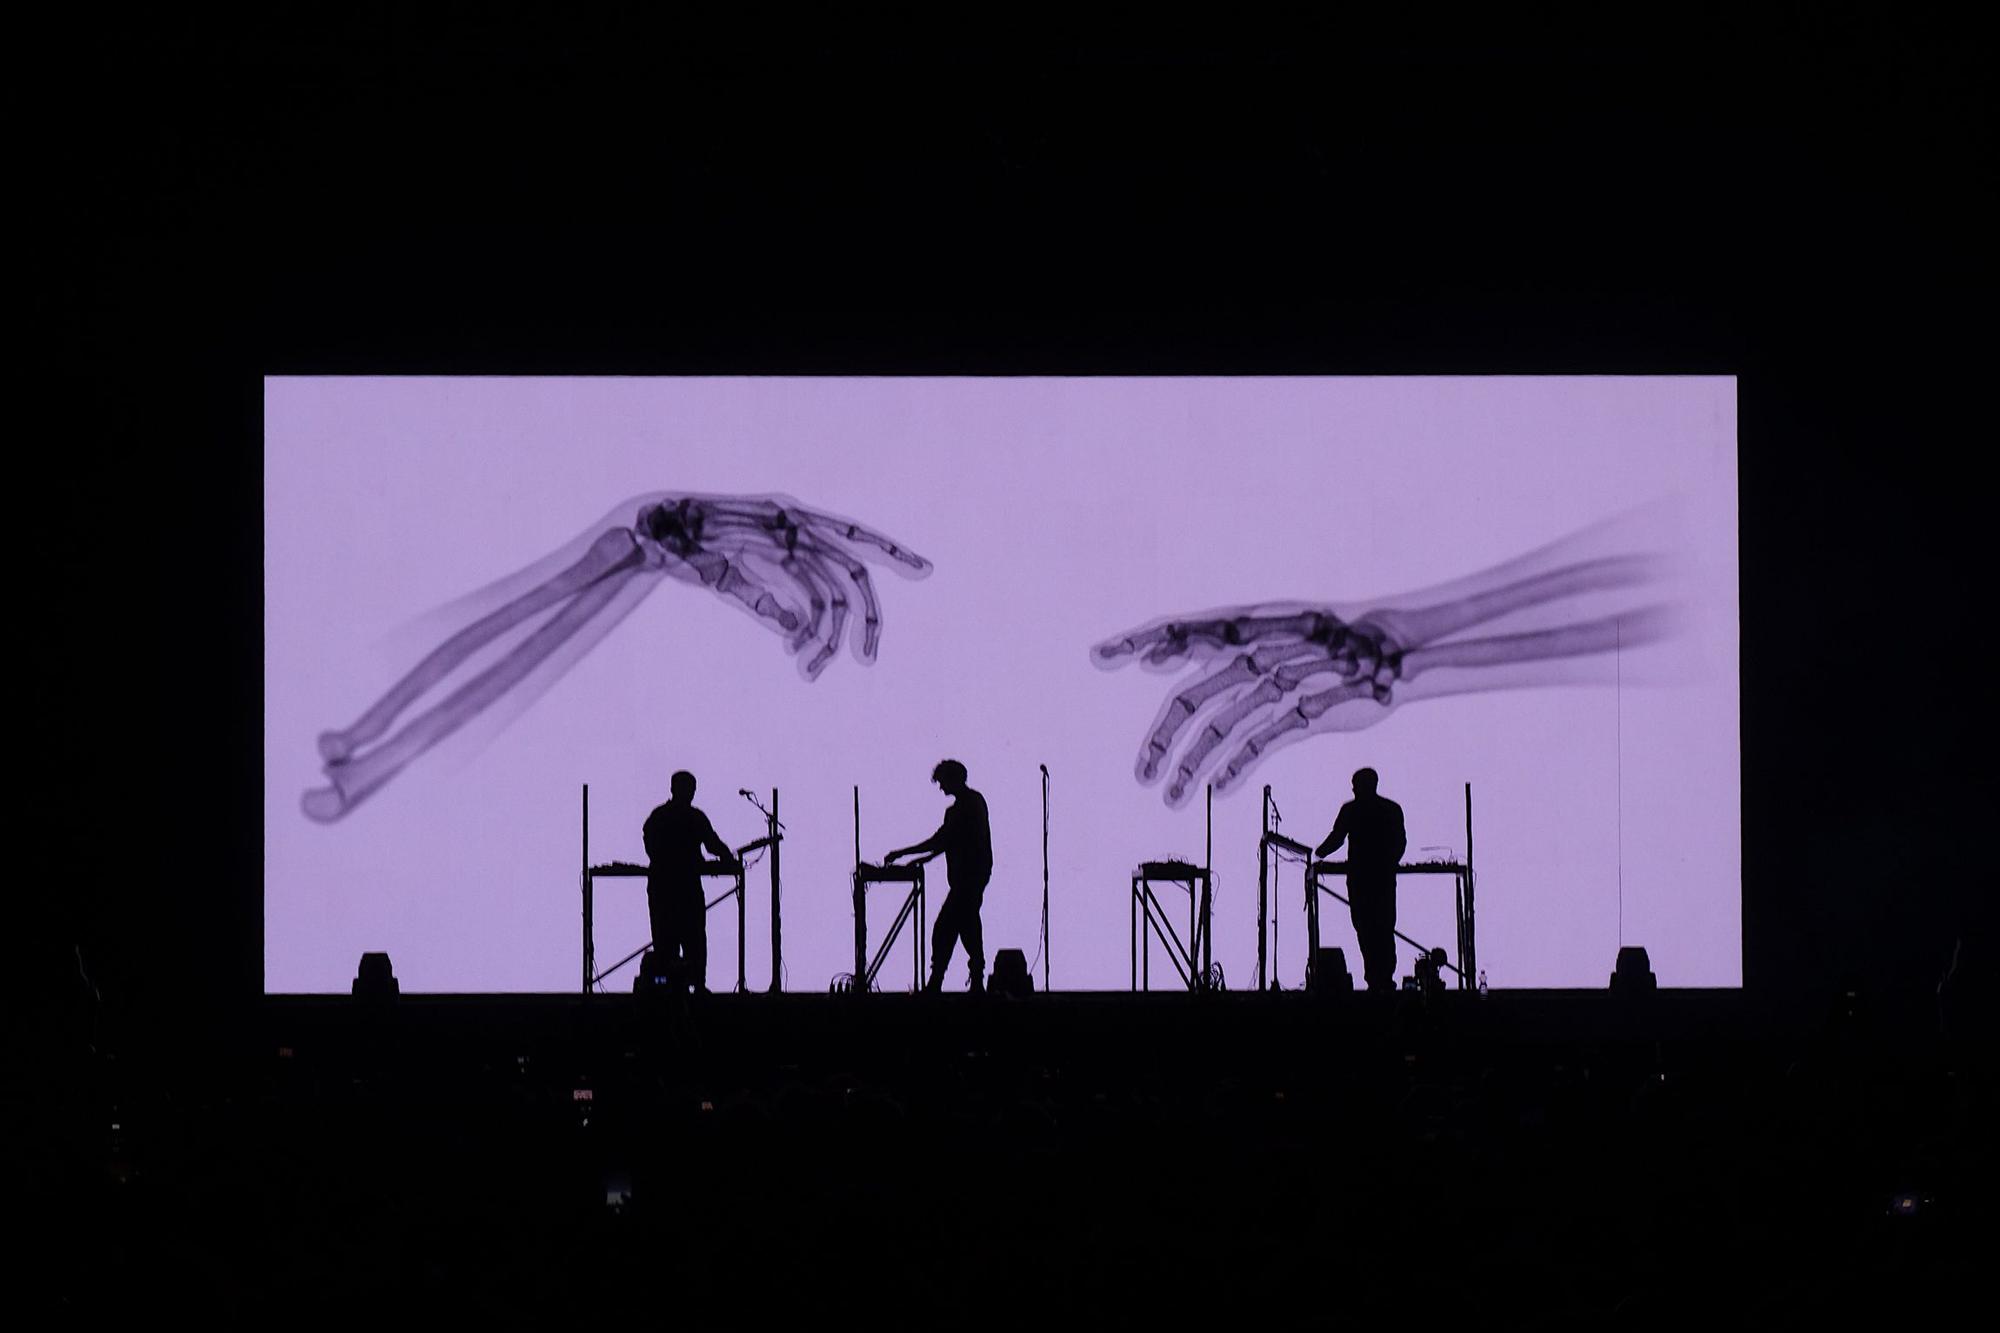 Los miembros de Moderat, durante una de sus actuaciones en directo acompañados de sus visuales.